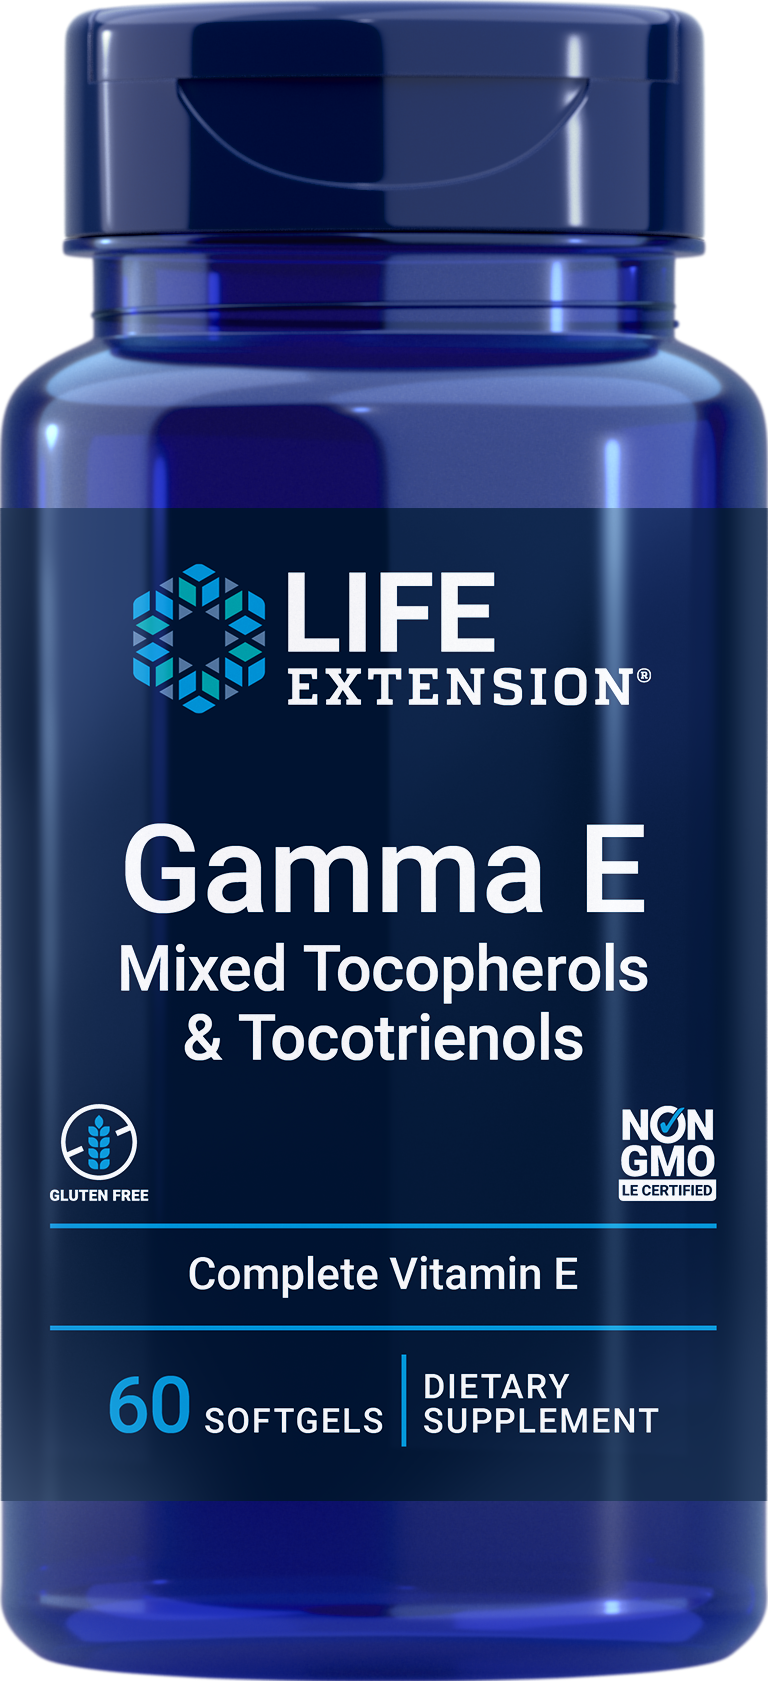 Gamma E with Tocopherols & Tocotrienols